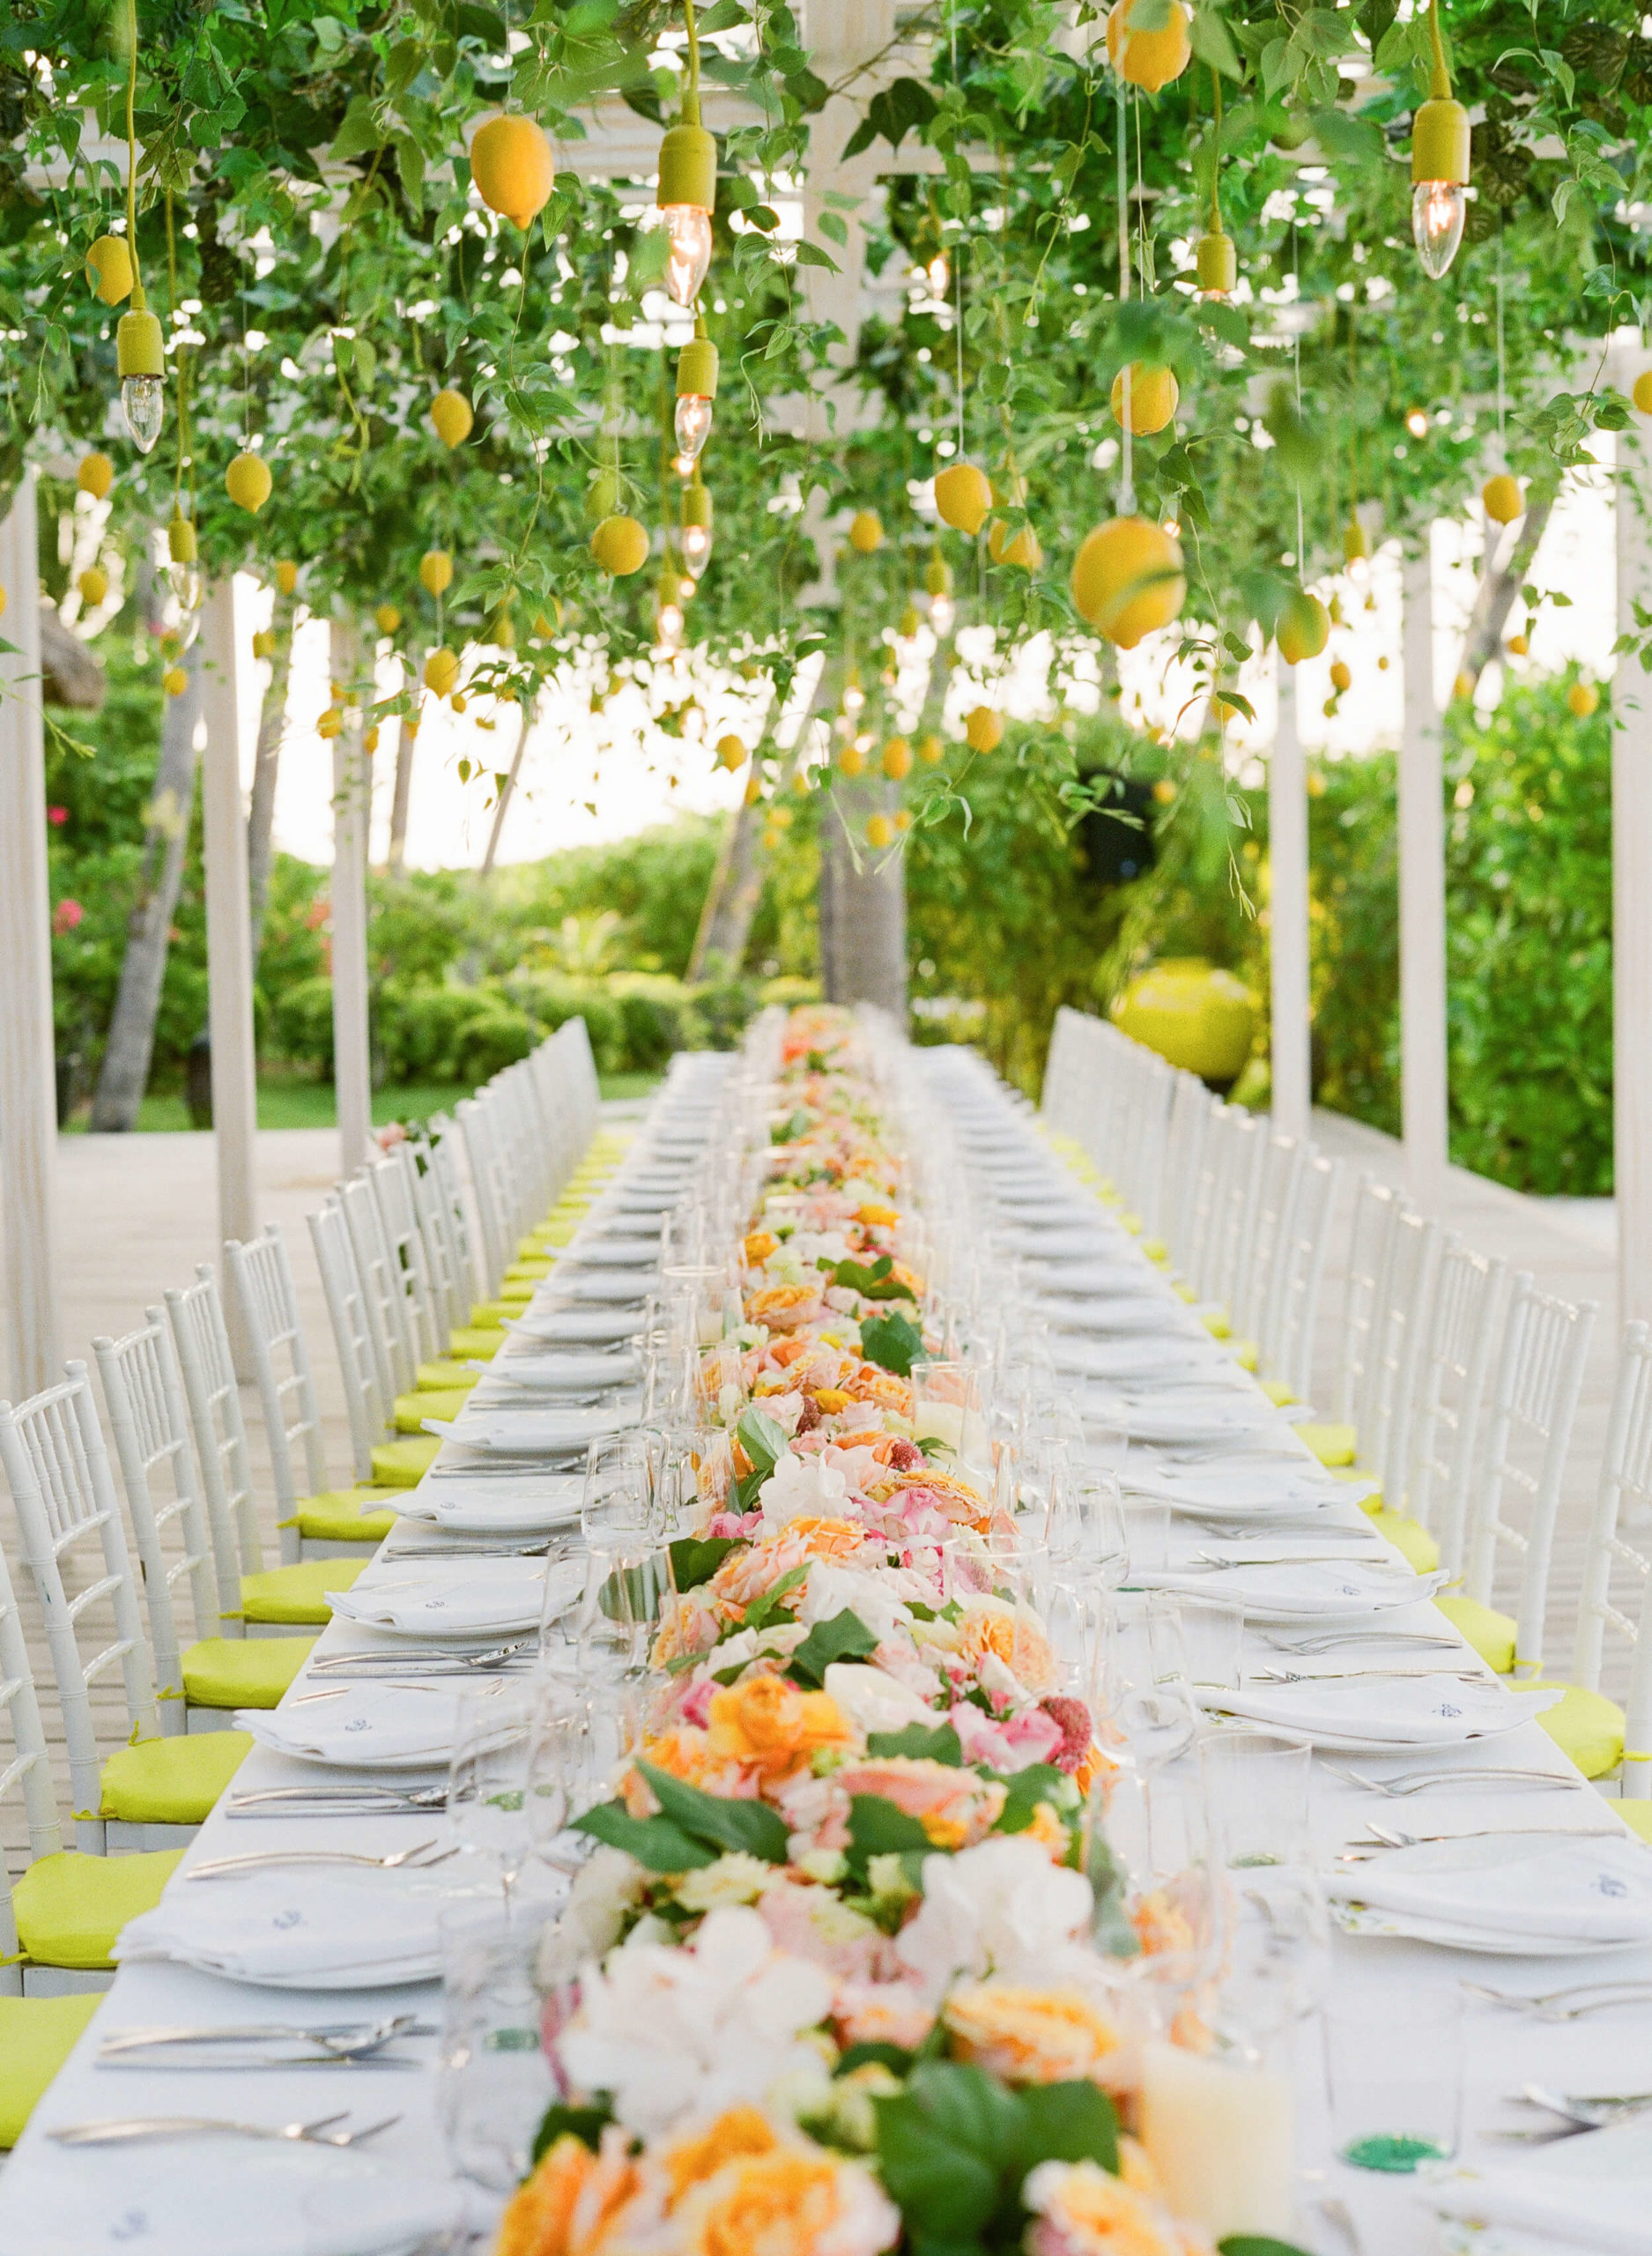 lemon-themed banquet table on the beach